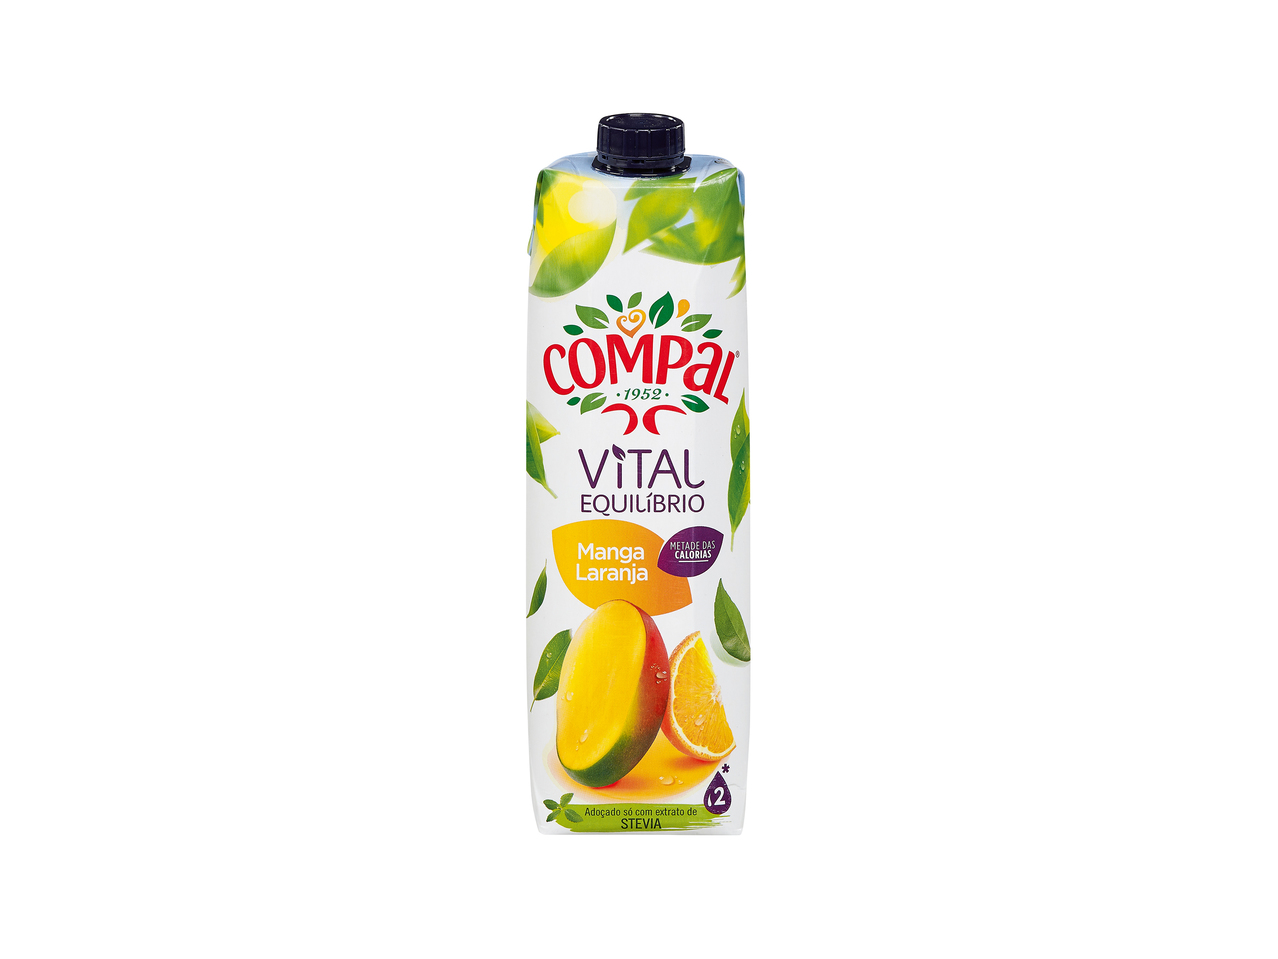 Mango-Orangen-Drink